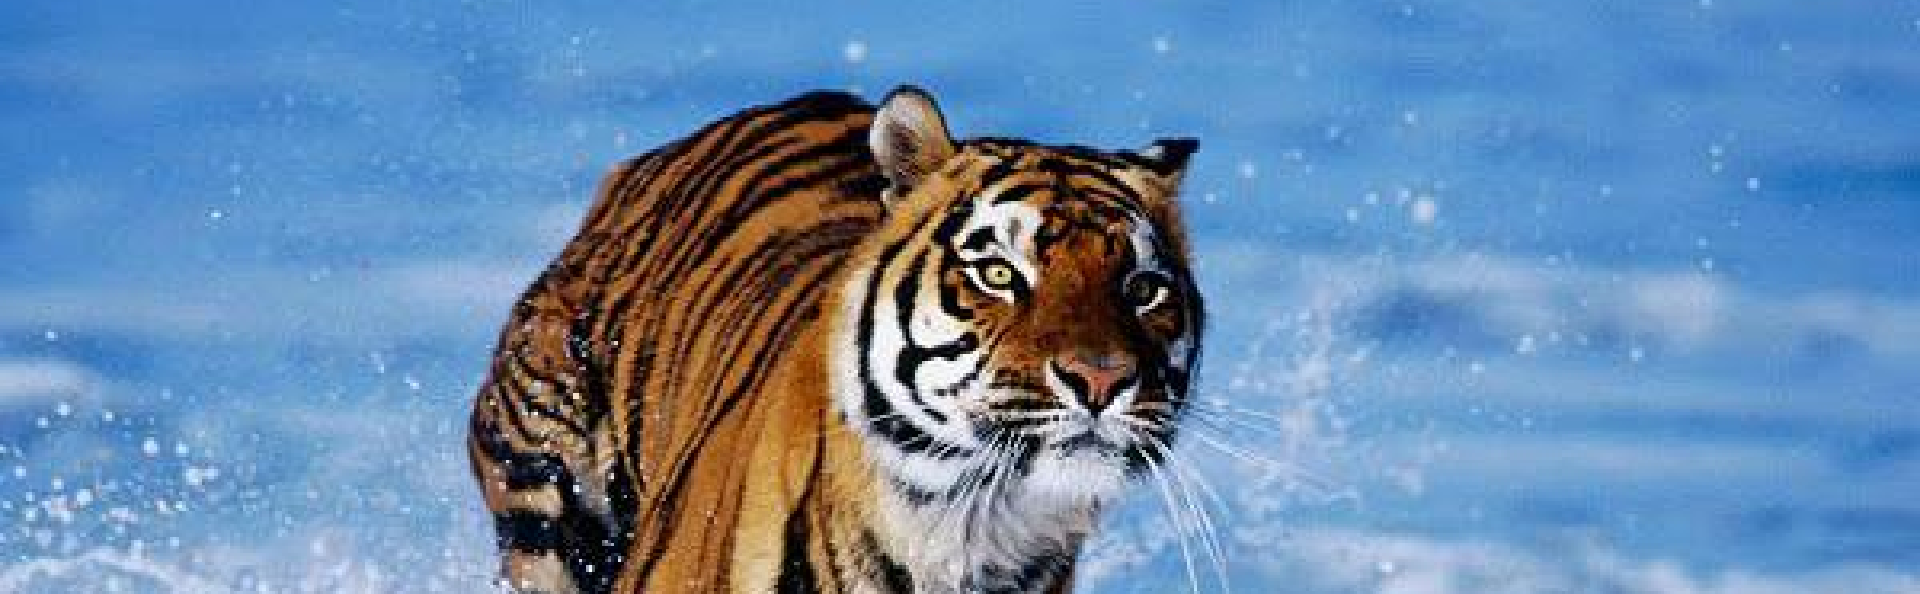 afbeelding van een tijger